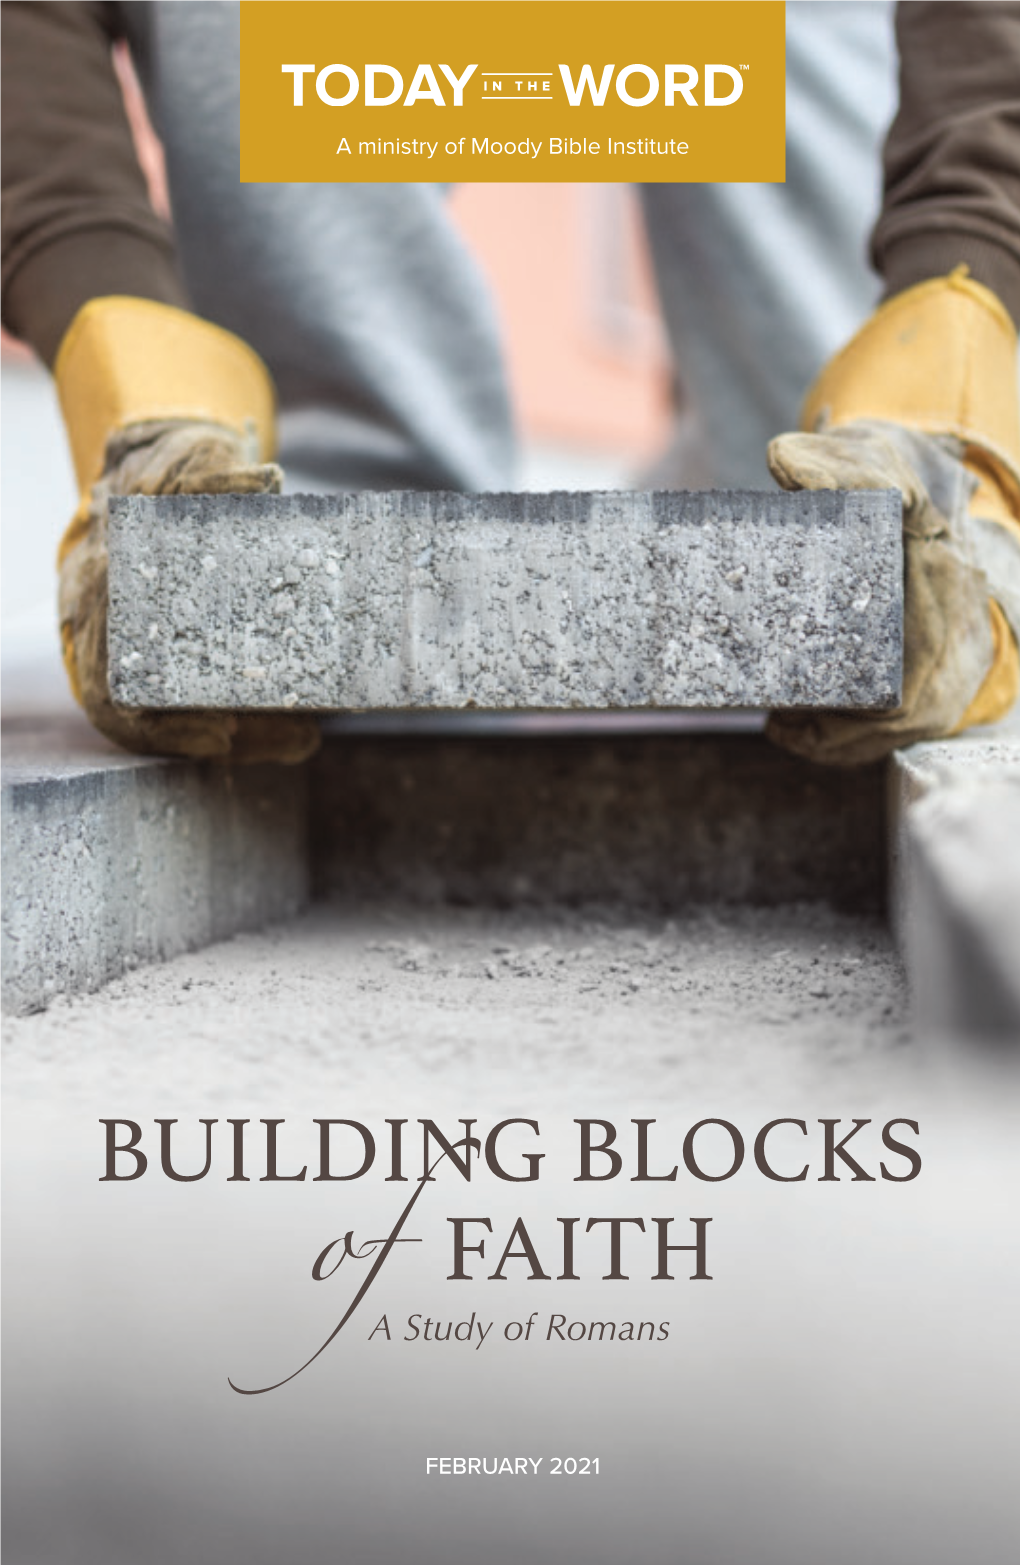 Building Blocks of Faith